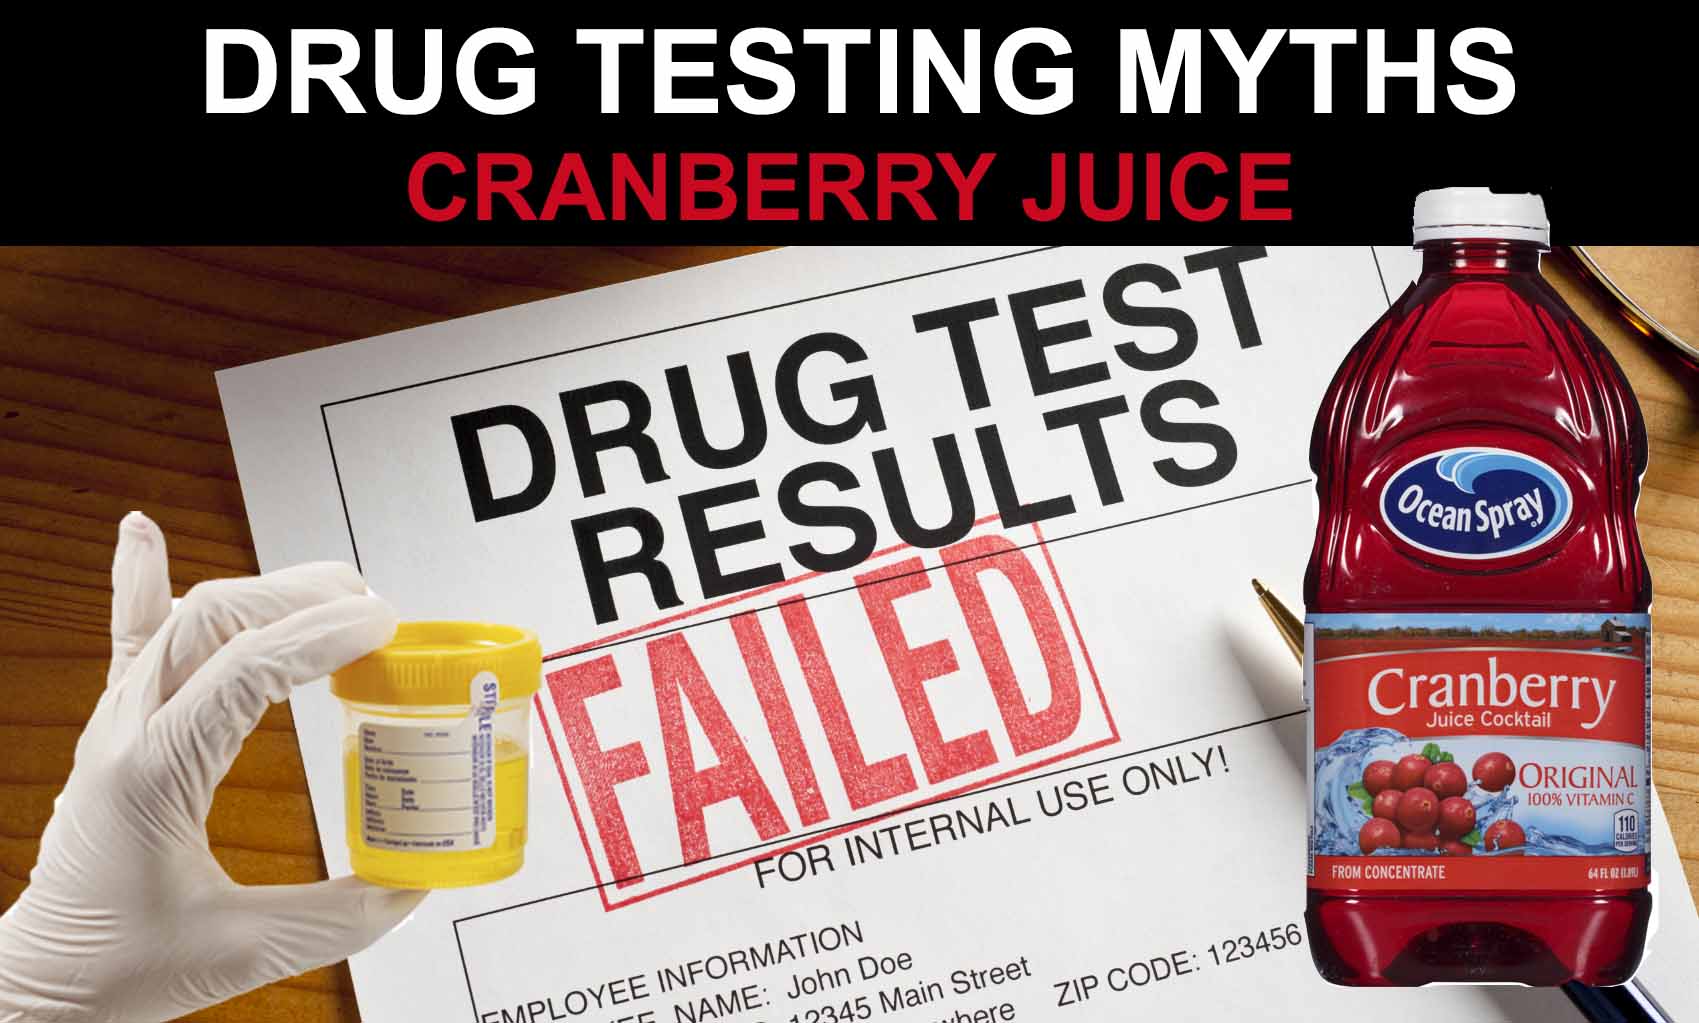 Drug test myths.